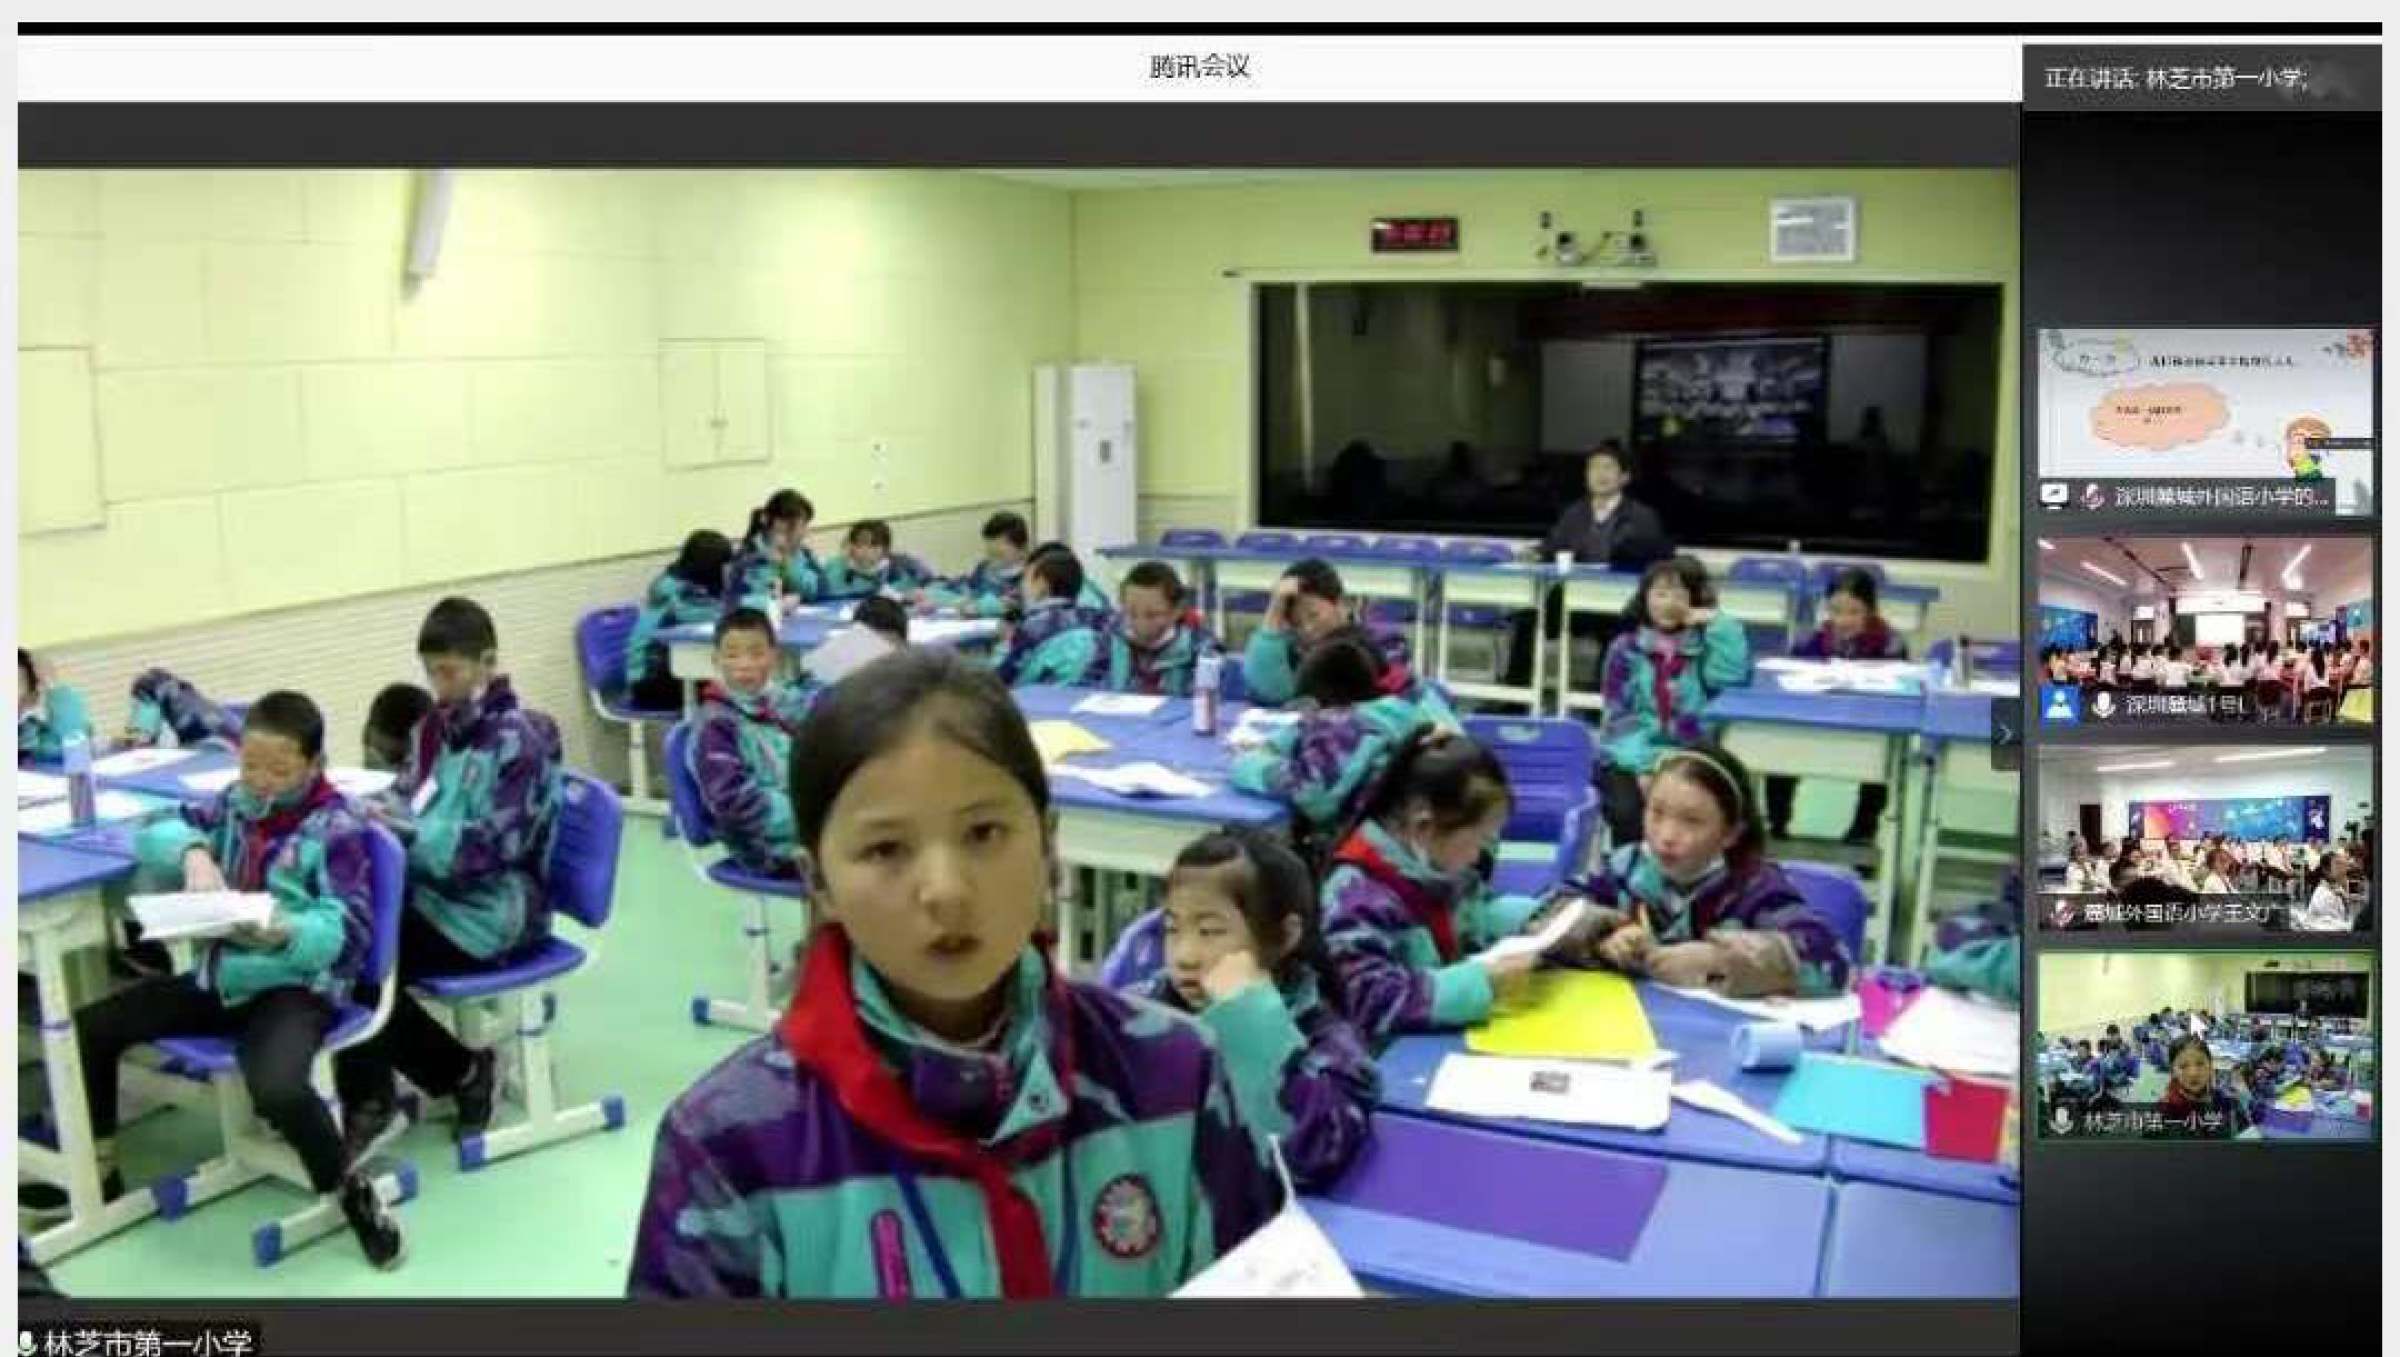 深圳市麓城外国语小学与林芝市一小线上课堂互动